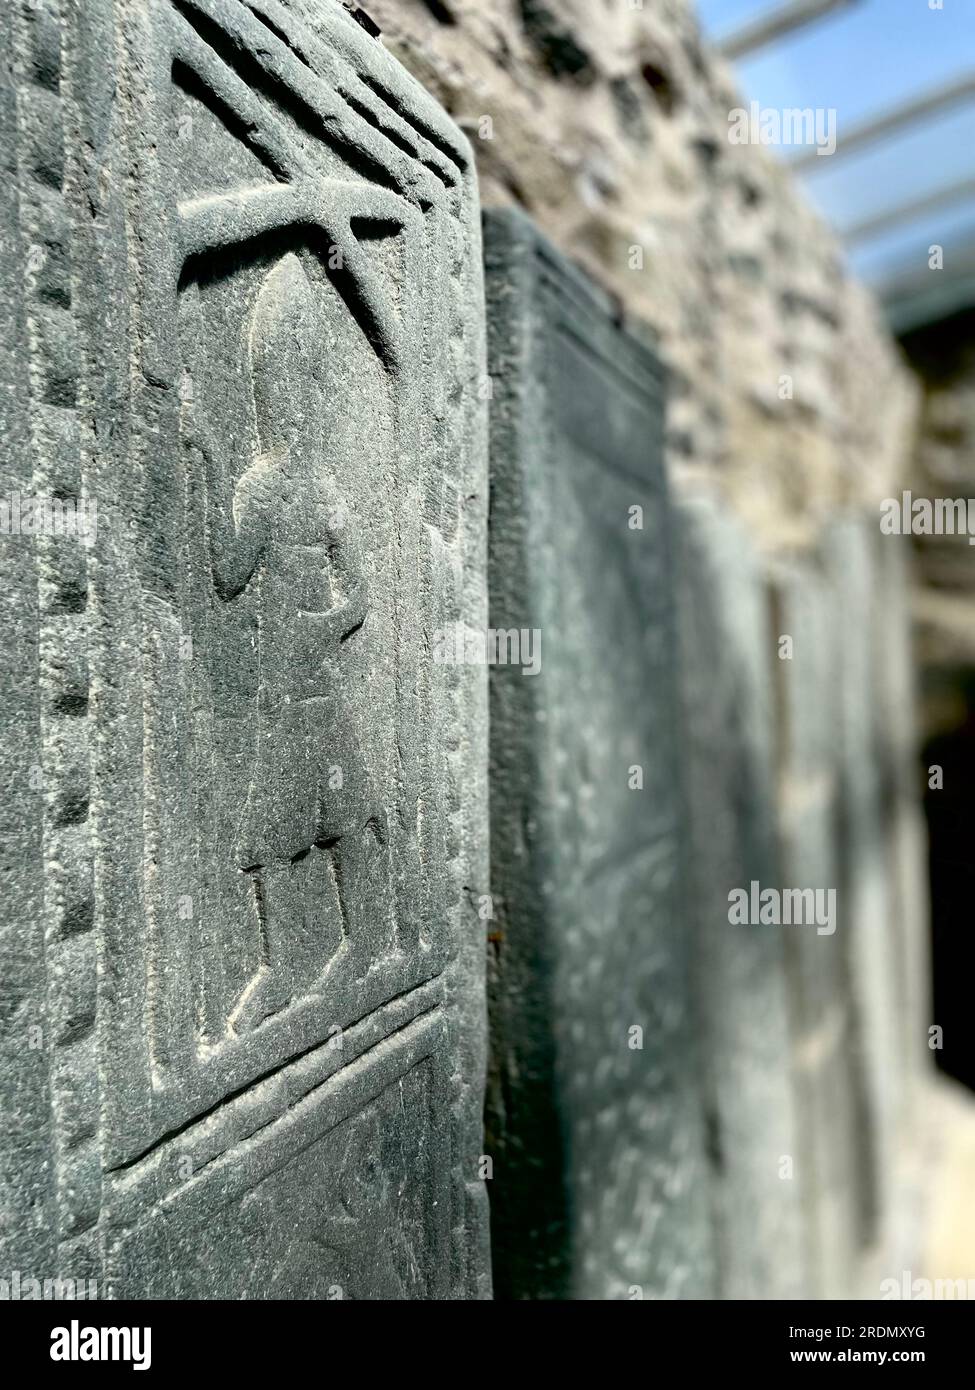 Les pierres Kilmartin - dalles tombales d'anciens thanes écossais et chevaliers. Fait partie de Kilmartin Glen, Argyll, Écosse Banque D'Images